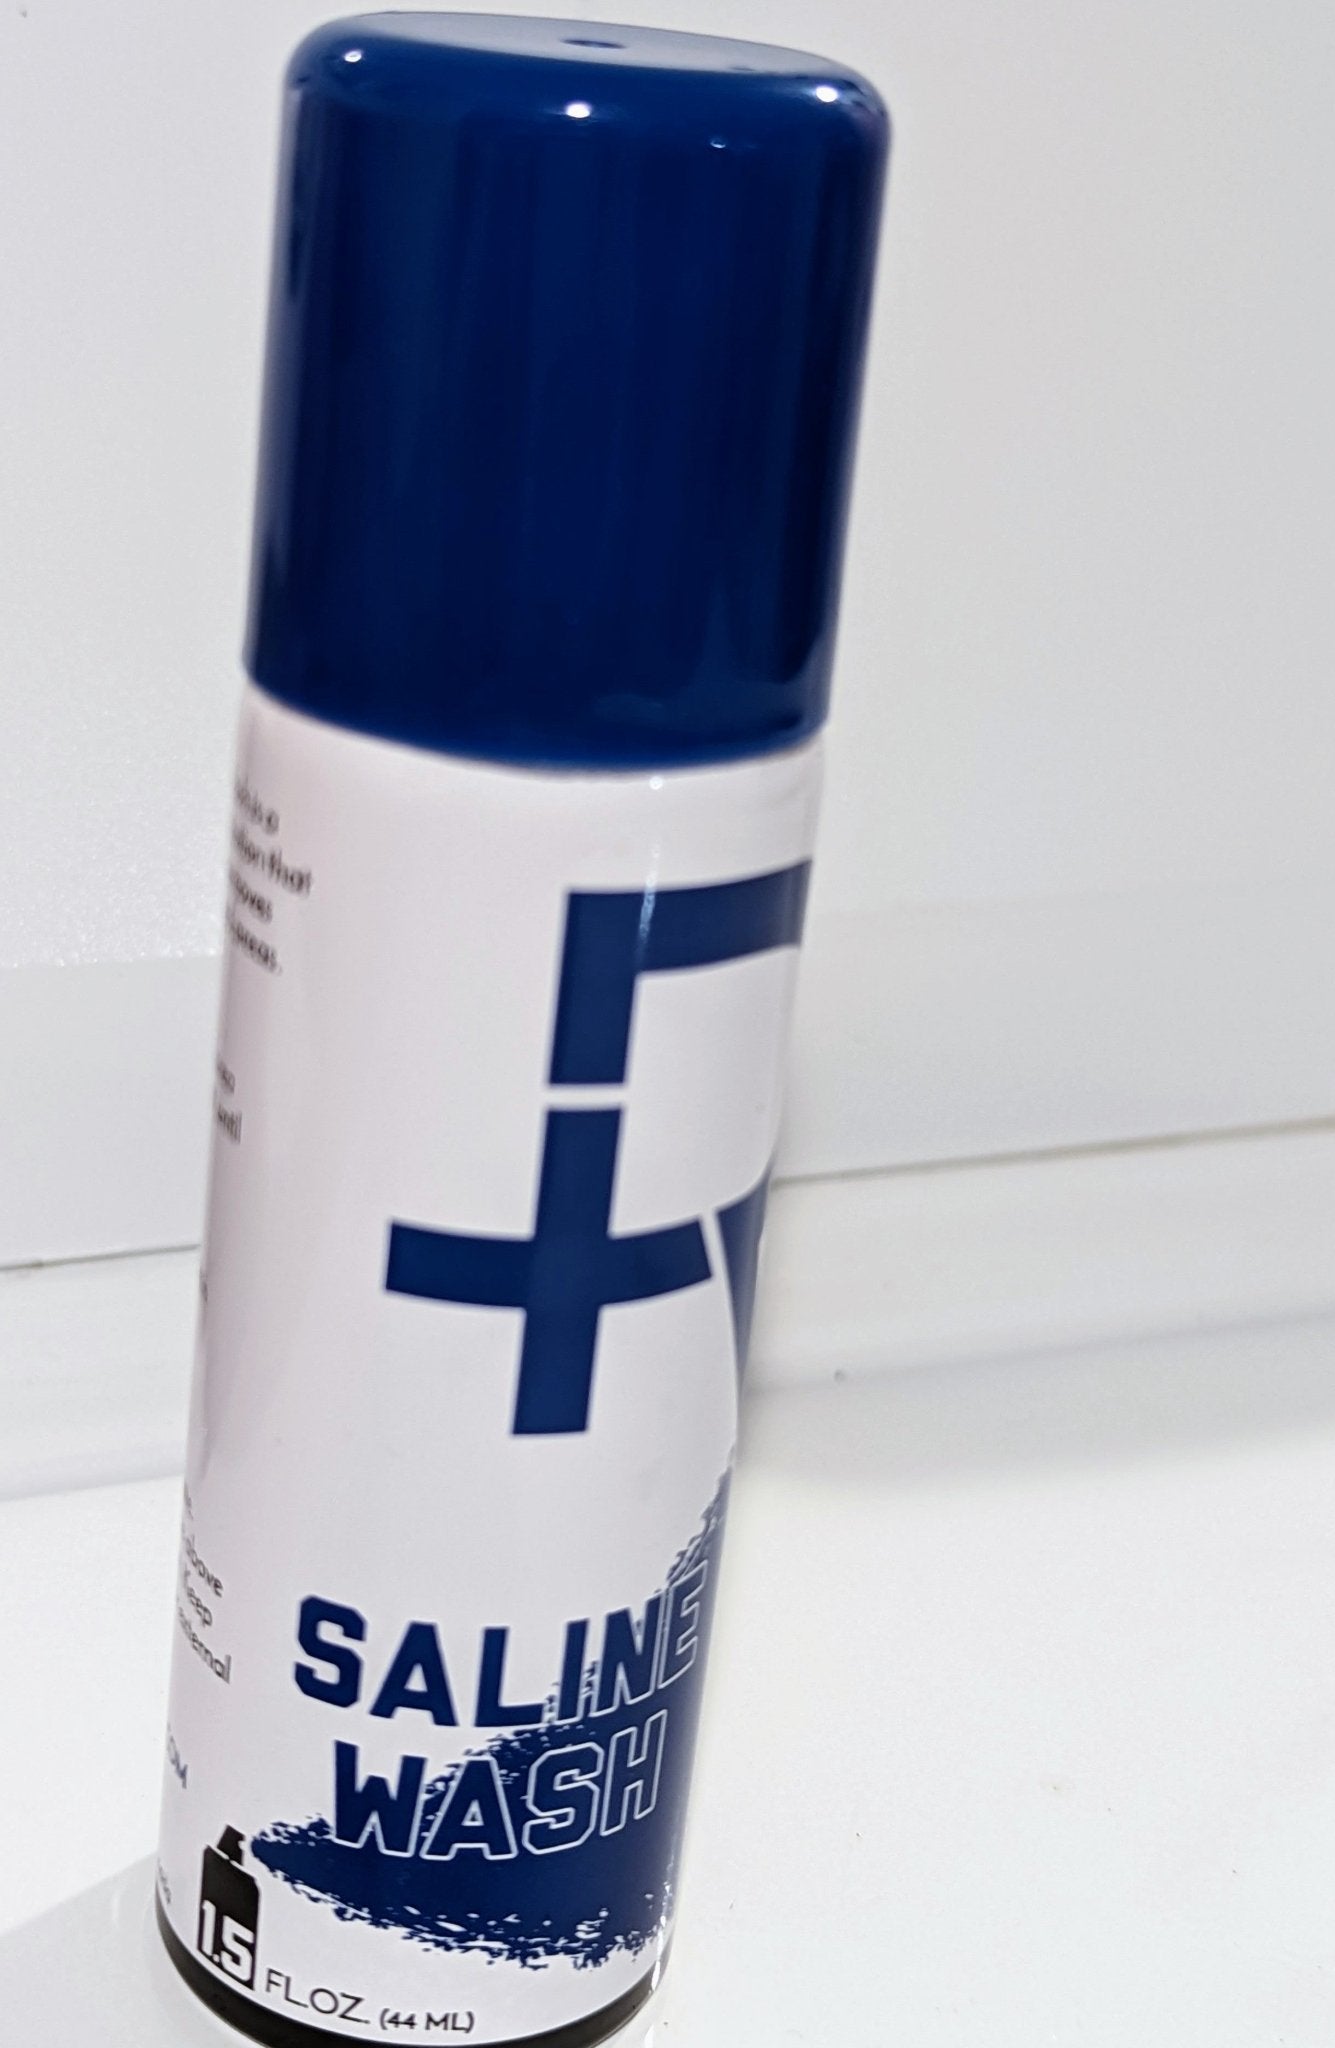 Saline wash body piercing saline solution 1.5 fl oz 44ml easy spray - Siren Body Jewelry